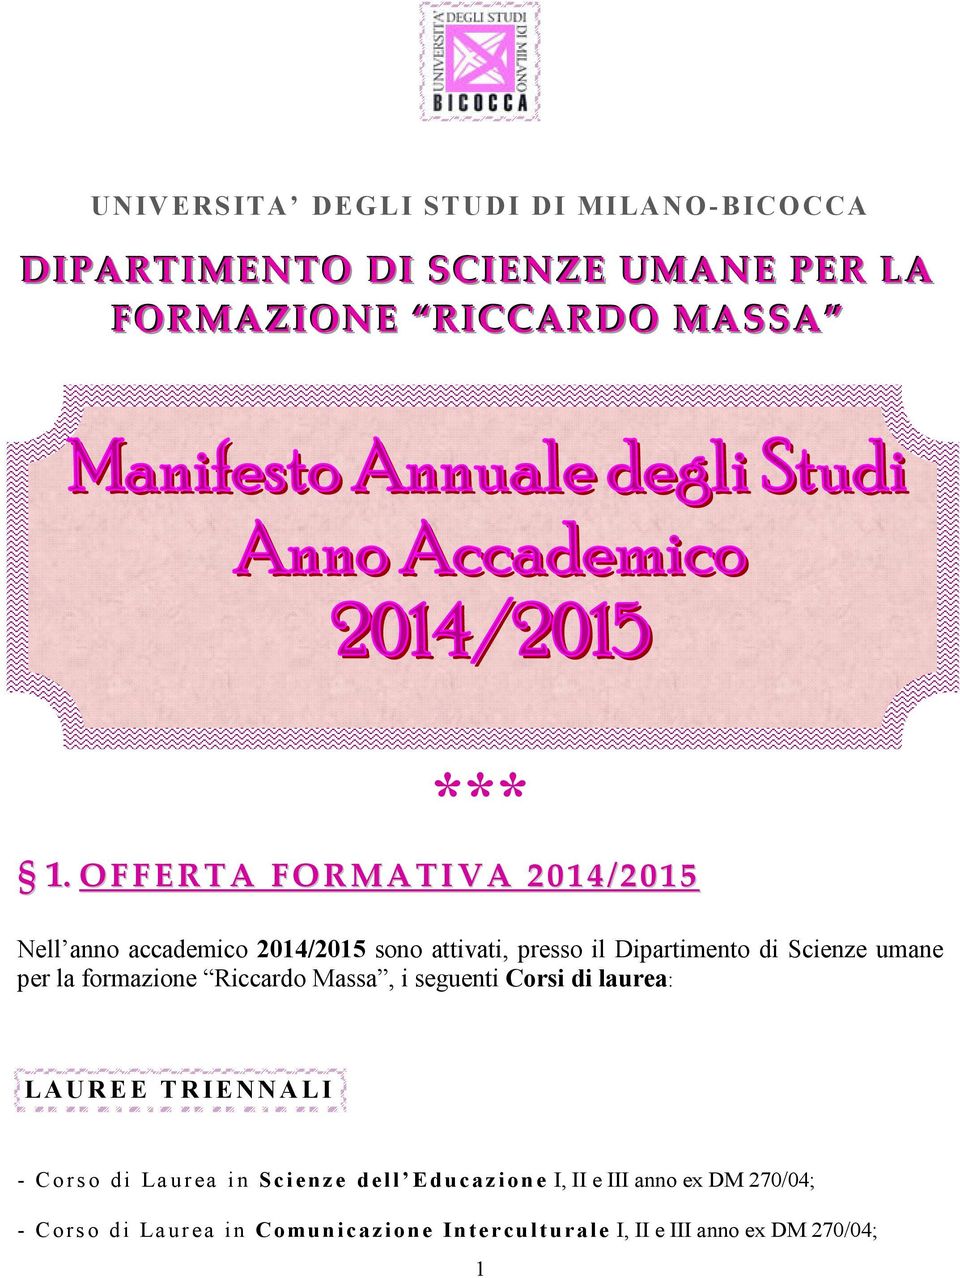 per la formazione Riccardo Massa, i seguenti Corsi di laurea: LAUREE TRIENNALI - Corso di Laurea in Scienze dell